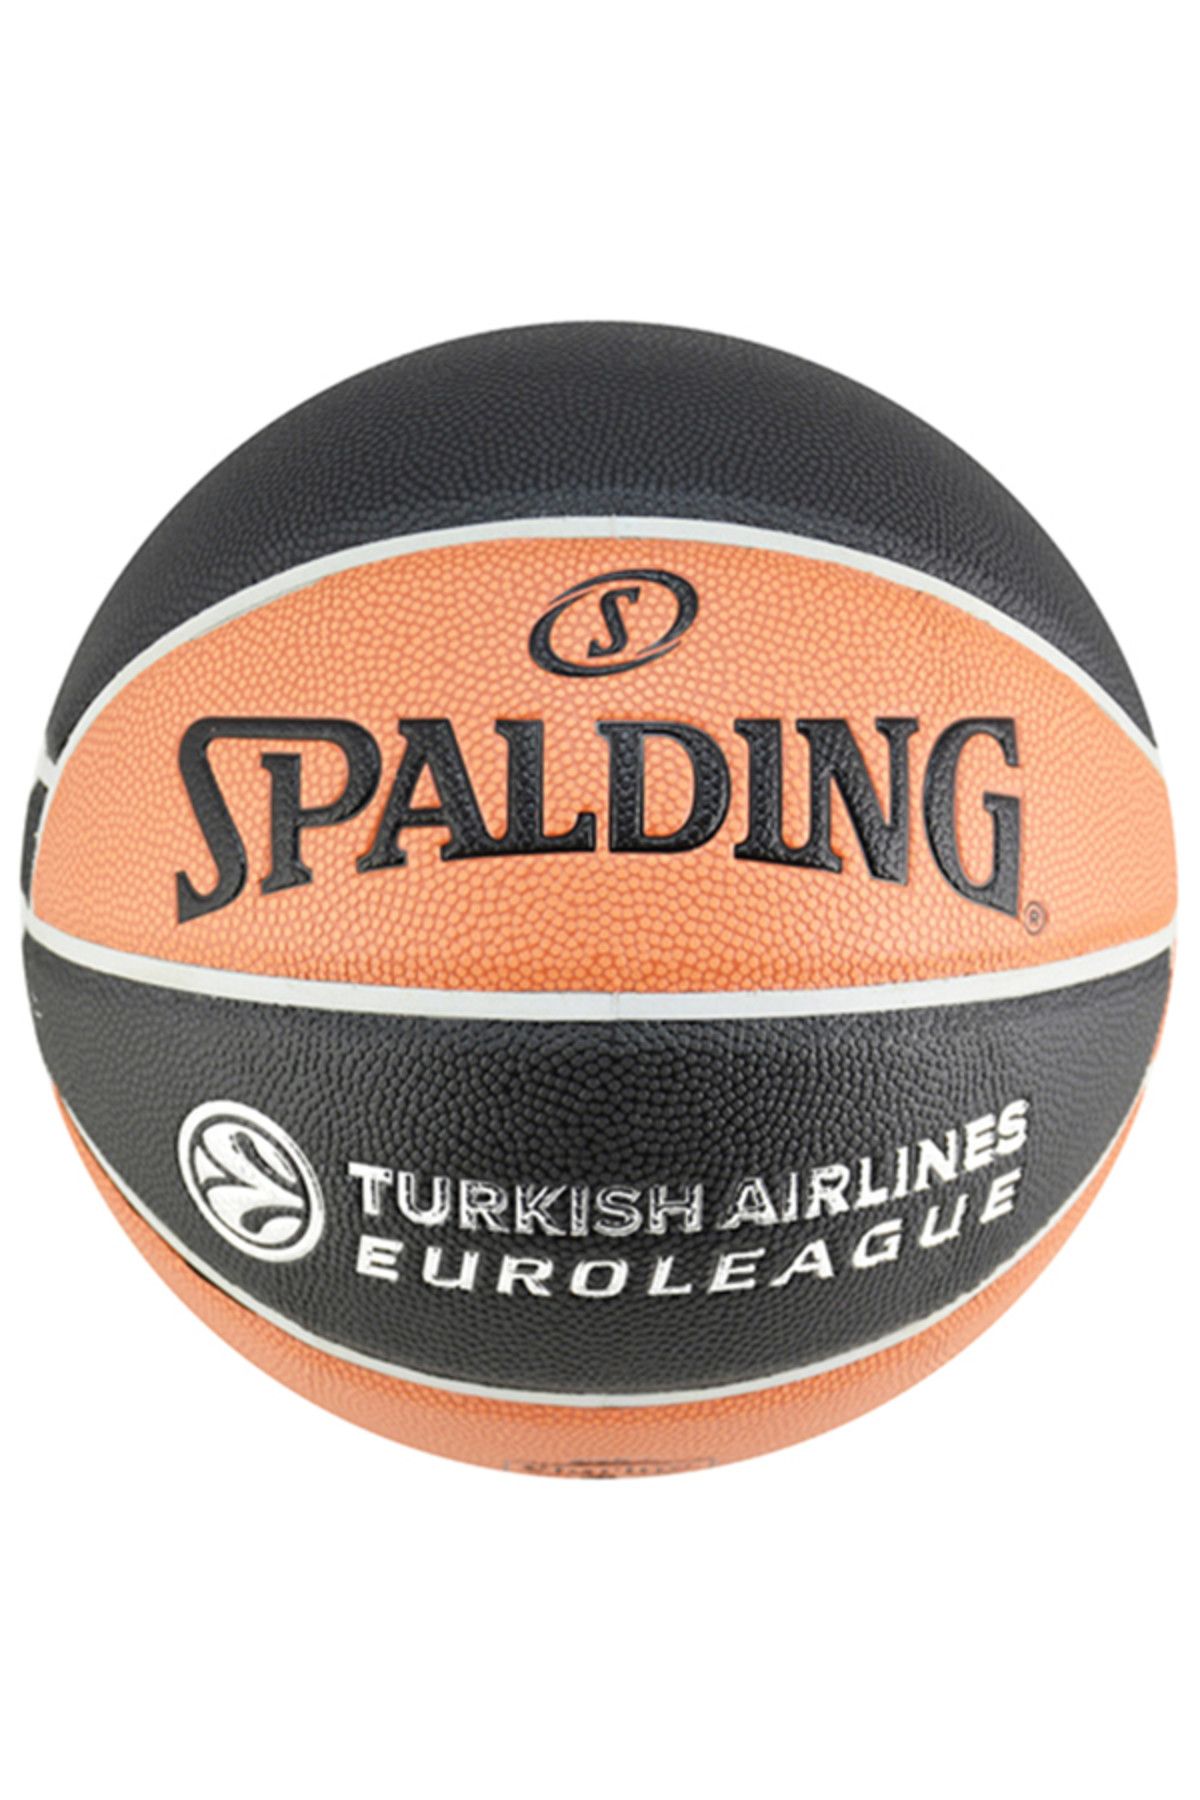 Spalding Basketbol Topu - 26346